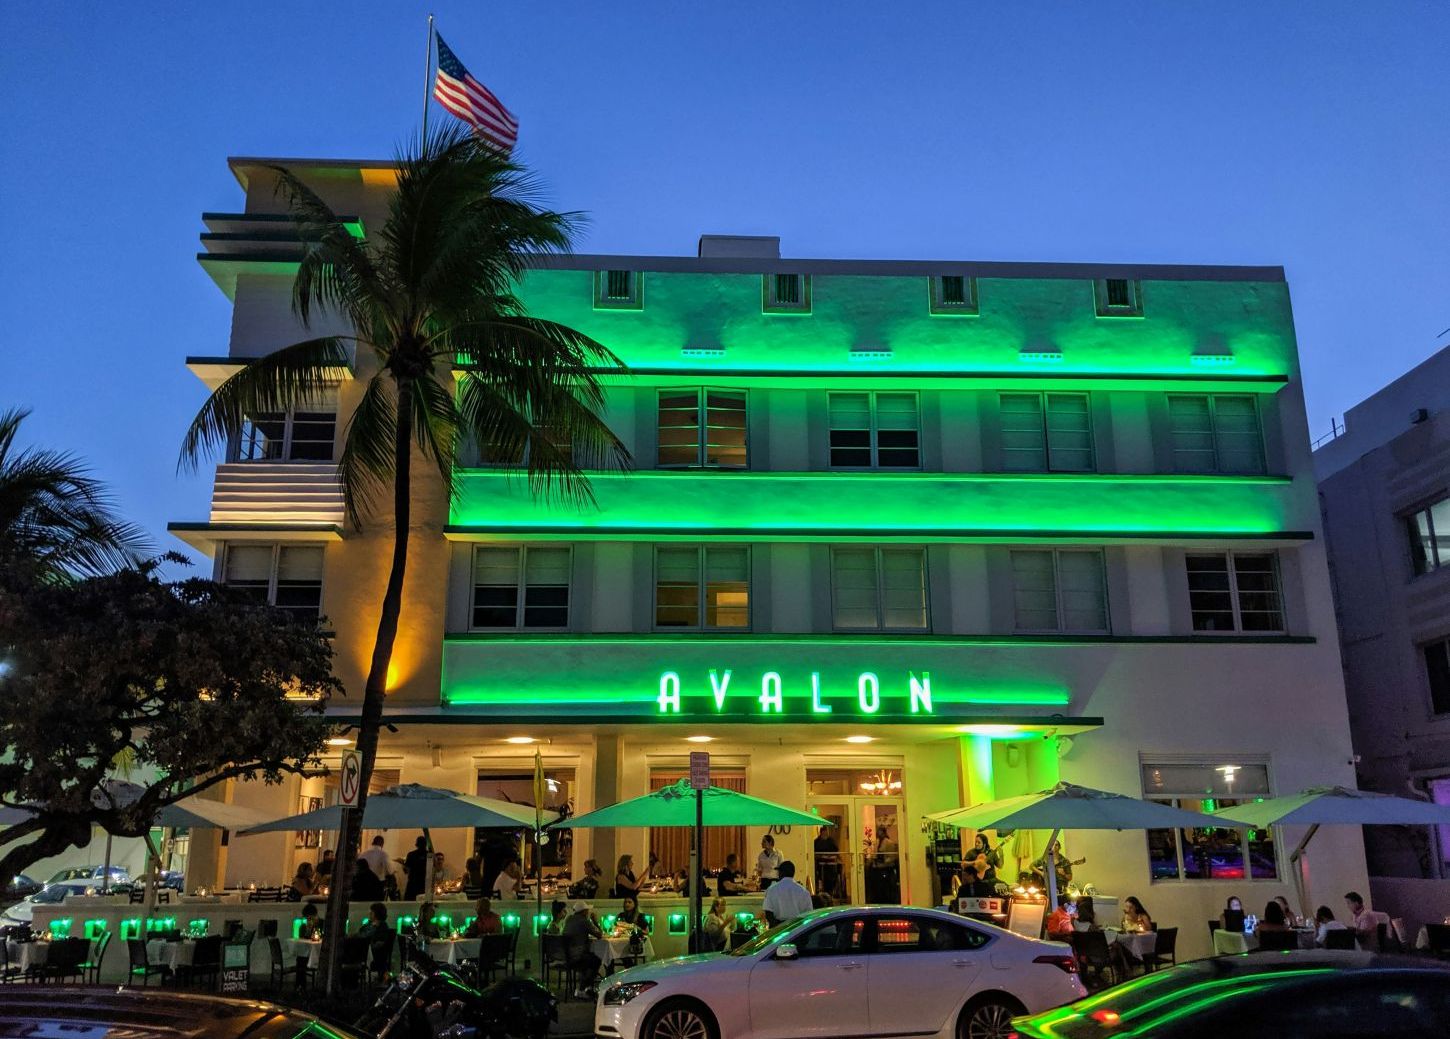 Hotel in Miami Beach